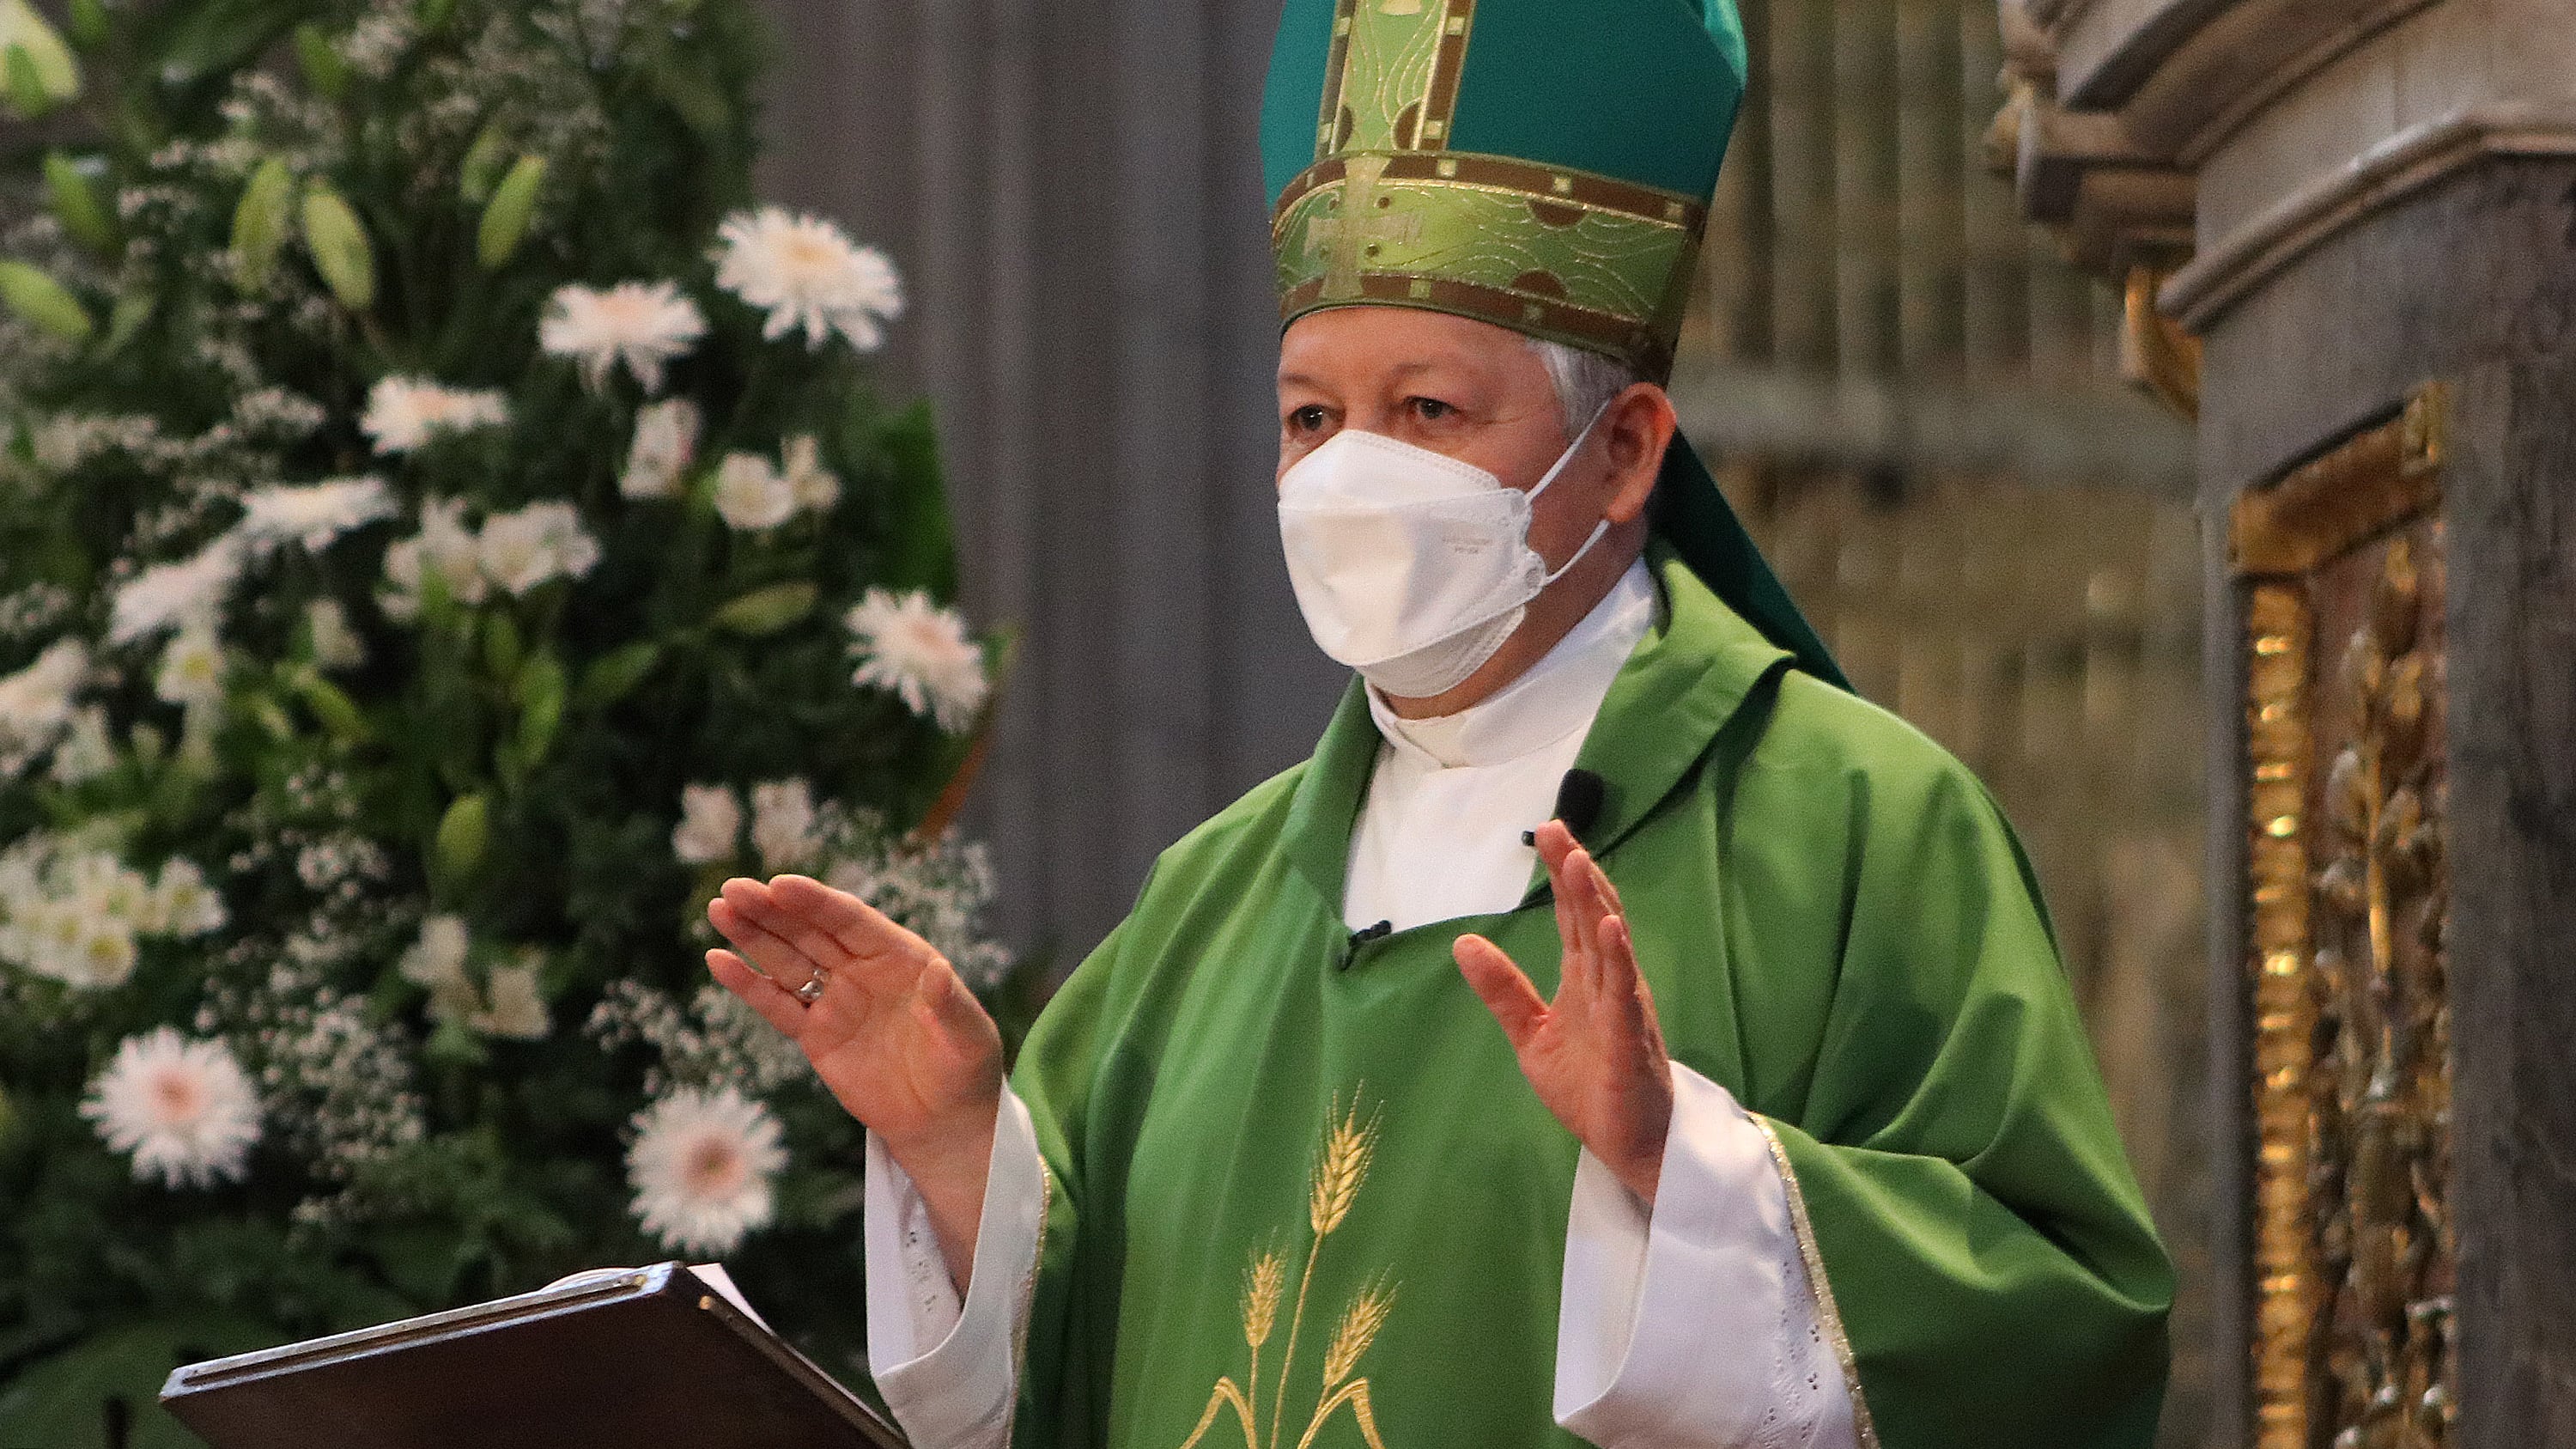 Preocupa a arzobispo aumento de contagios y variantes de Covid